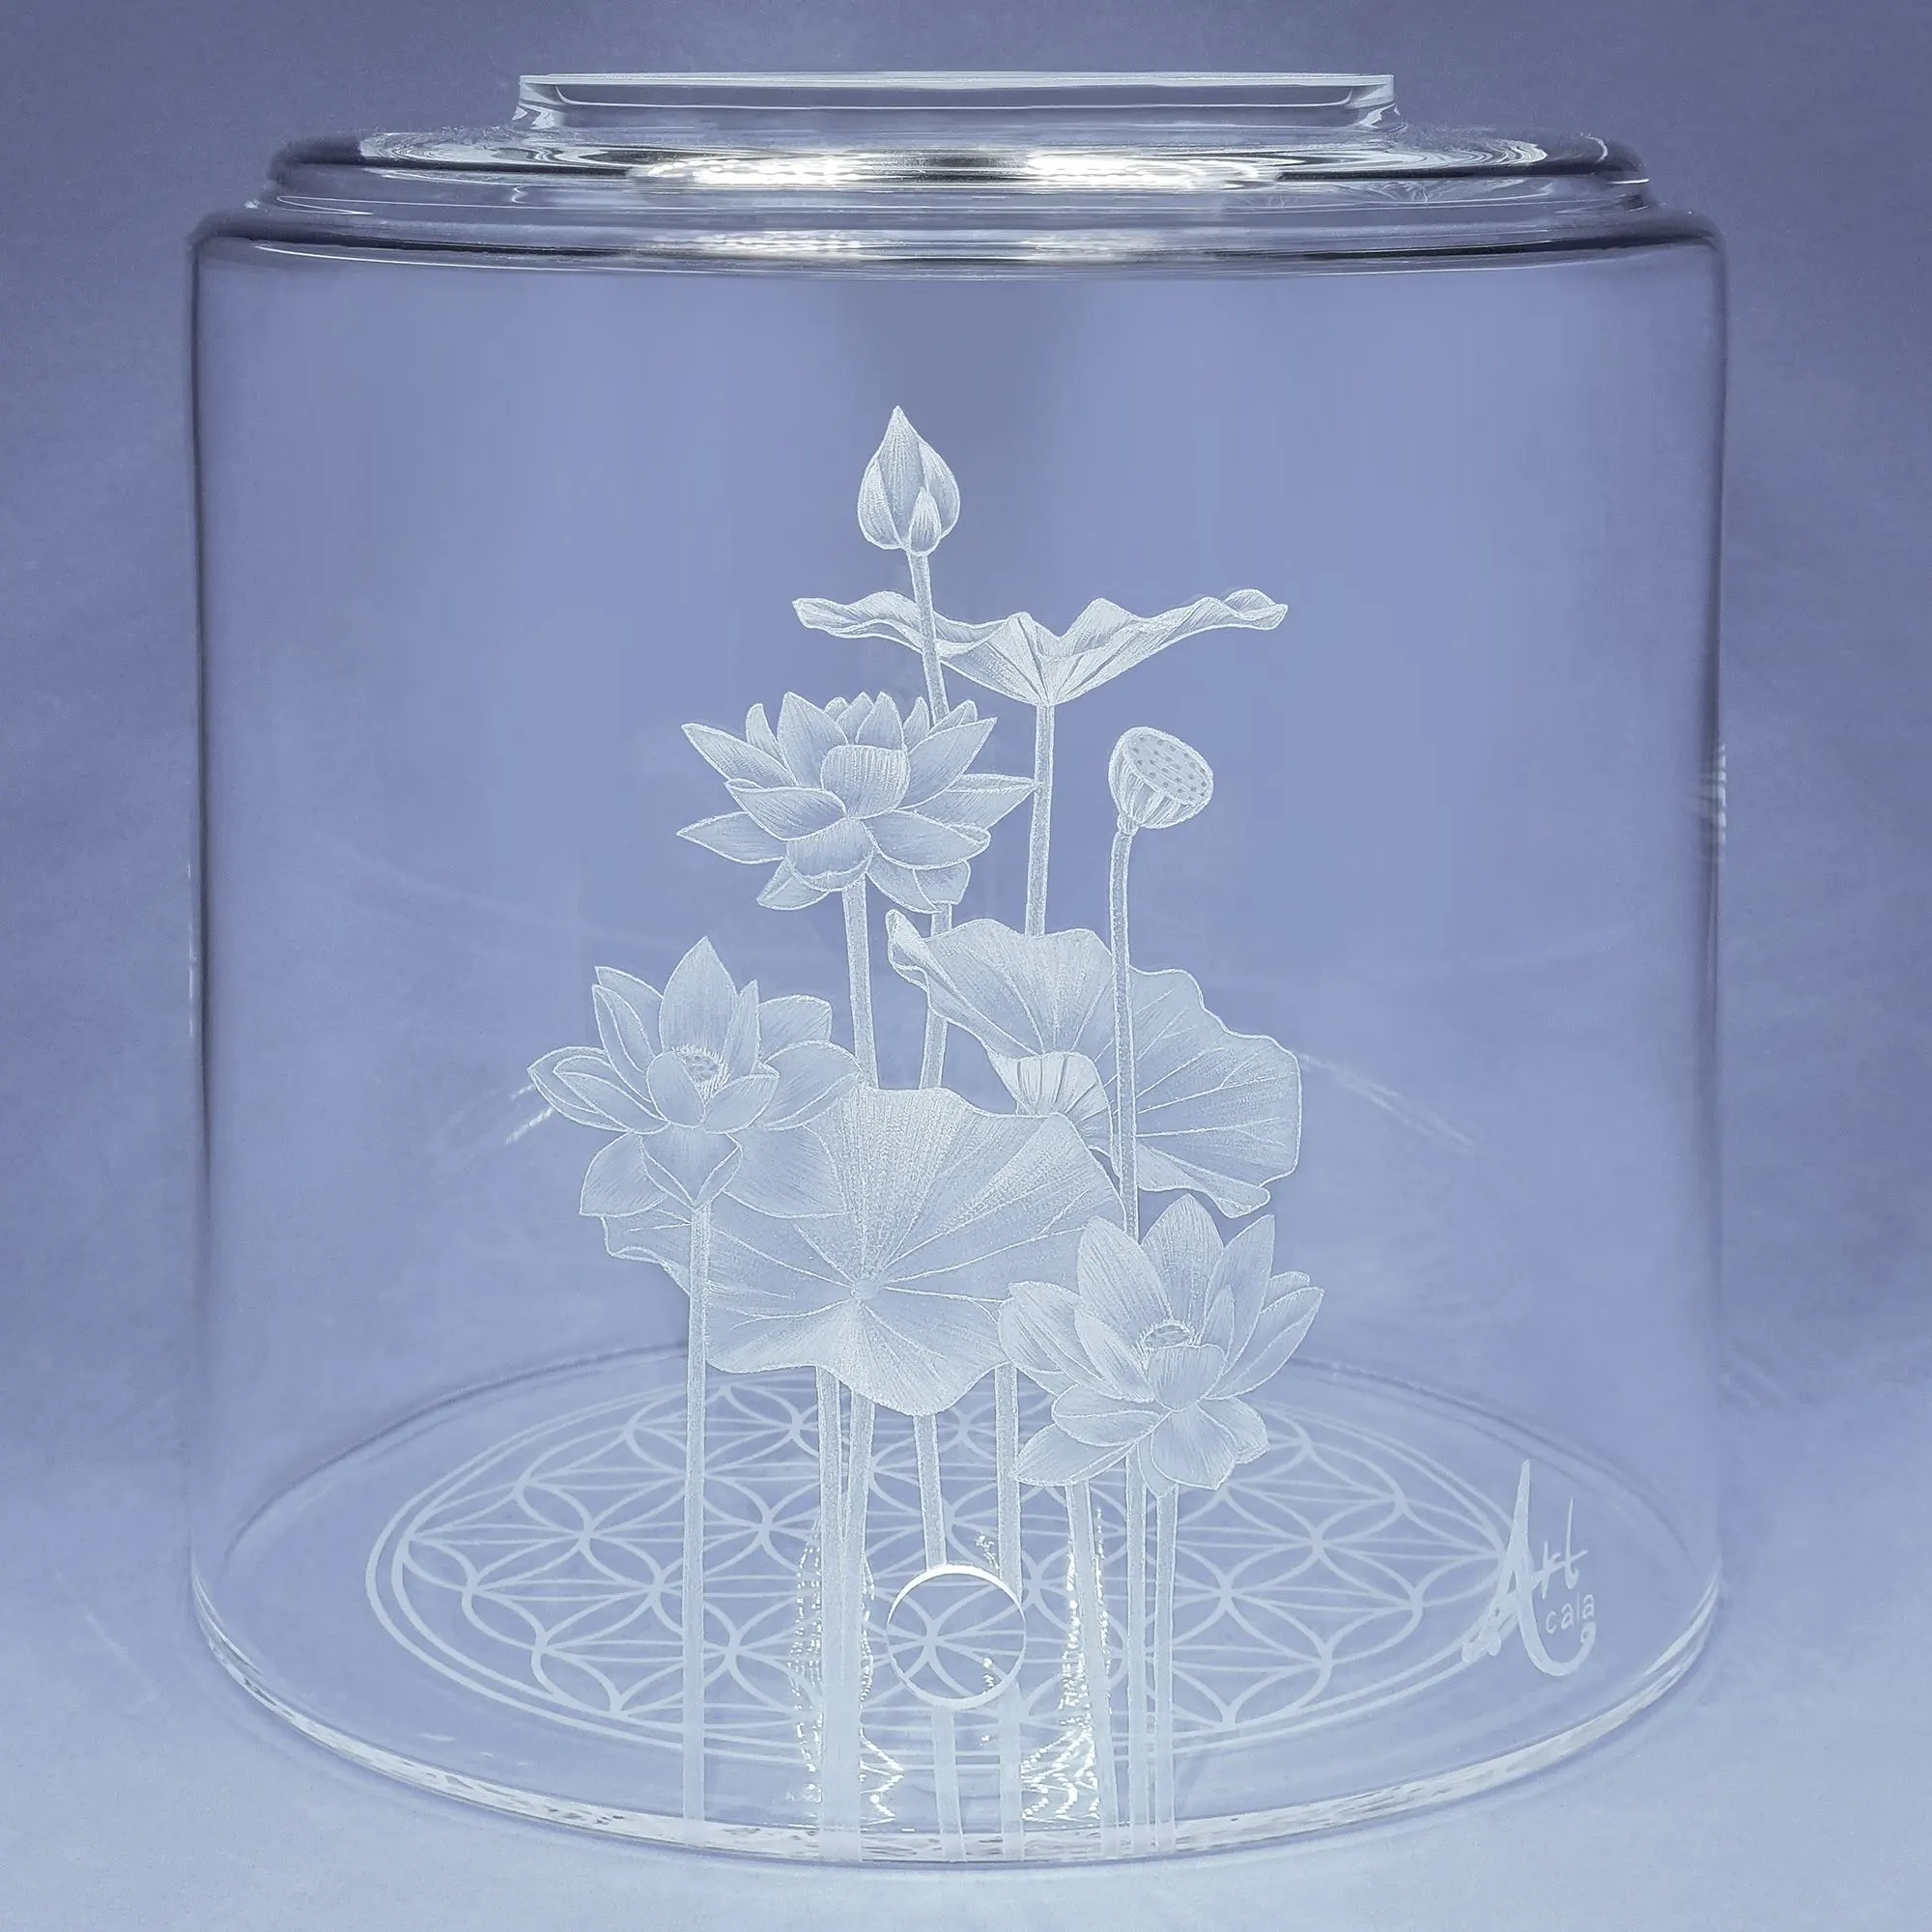 Vorratstank für Wasserfilter in klrem Glas mit Lotusblume Gravur